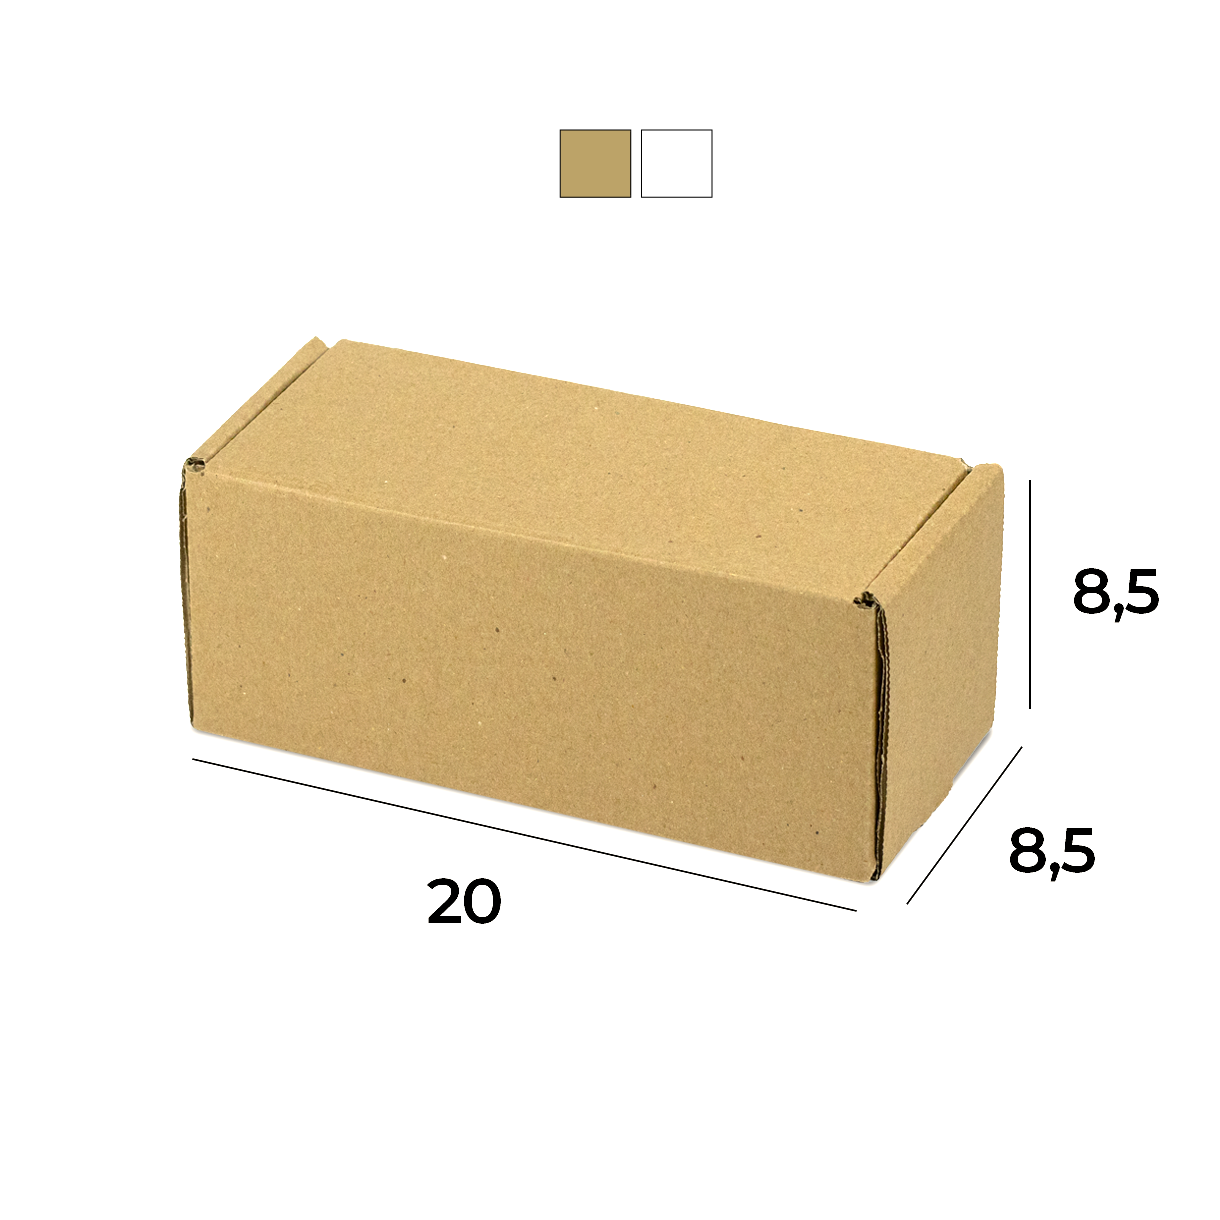 Caixa de Papelão Sedex 25 (20x8,5x8,5) Lisa